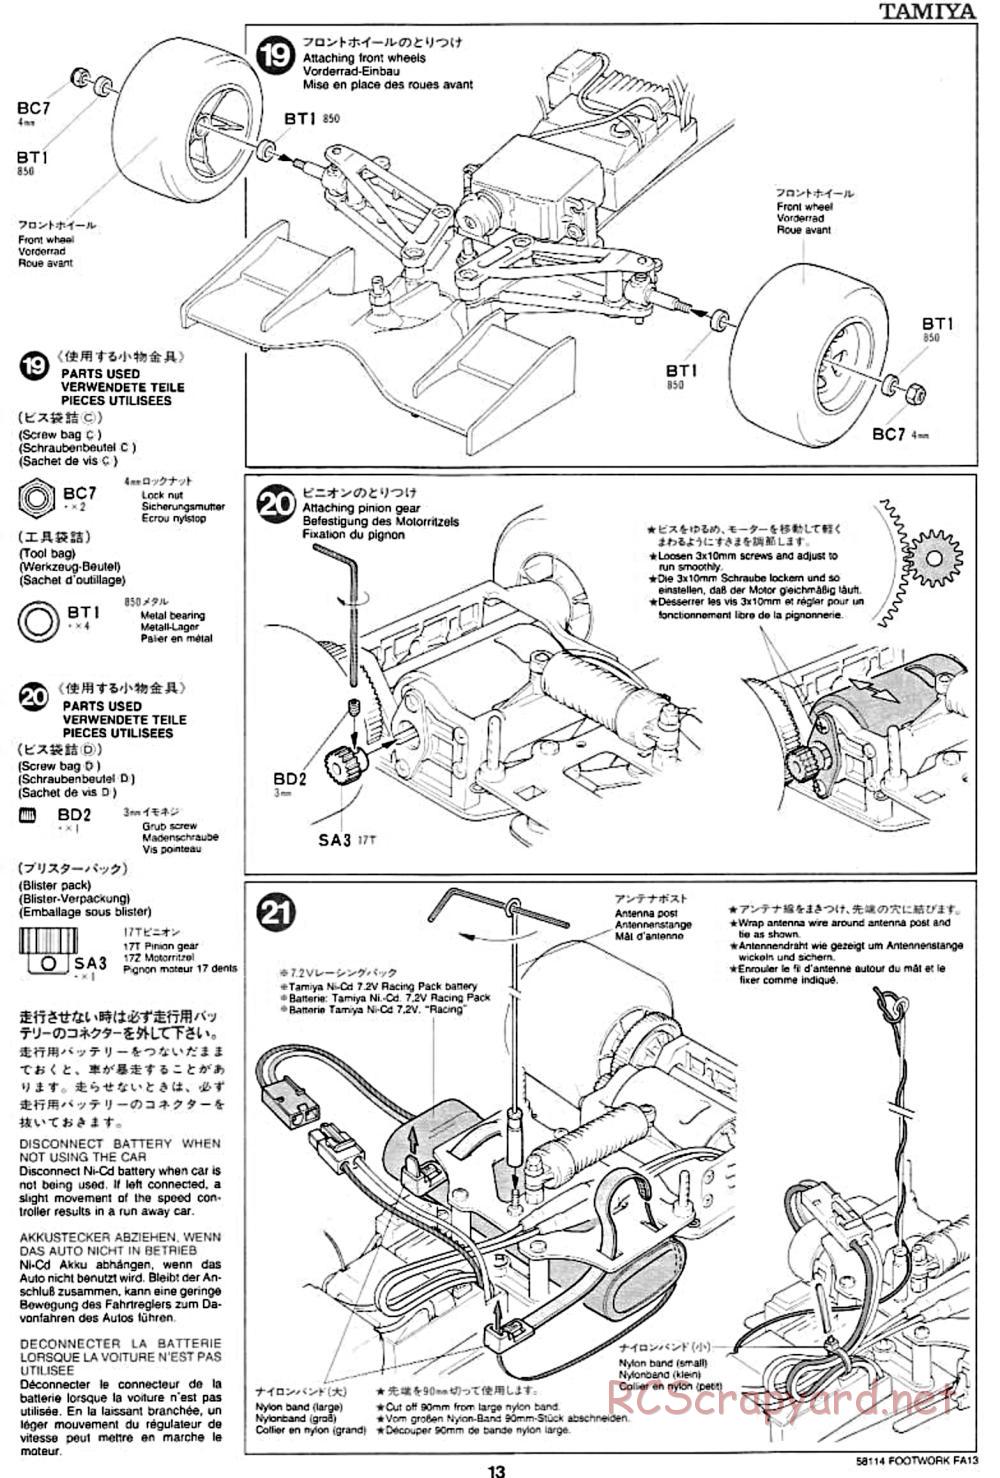 Tamiya - Footwork FA13 Mugen Honda - F102 Chassis - Manual - Page 13